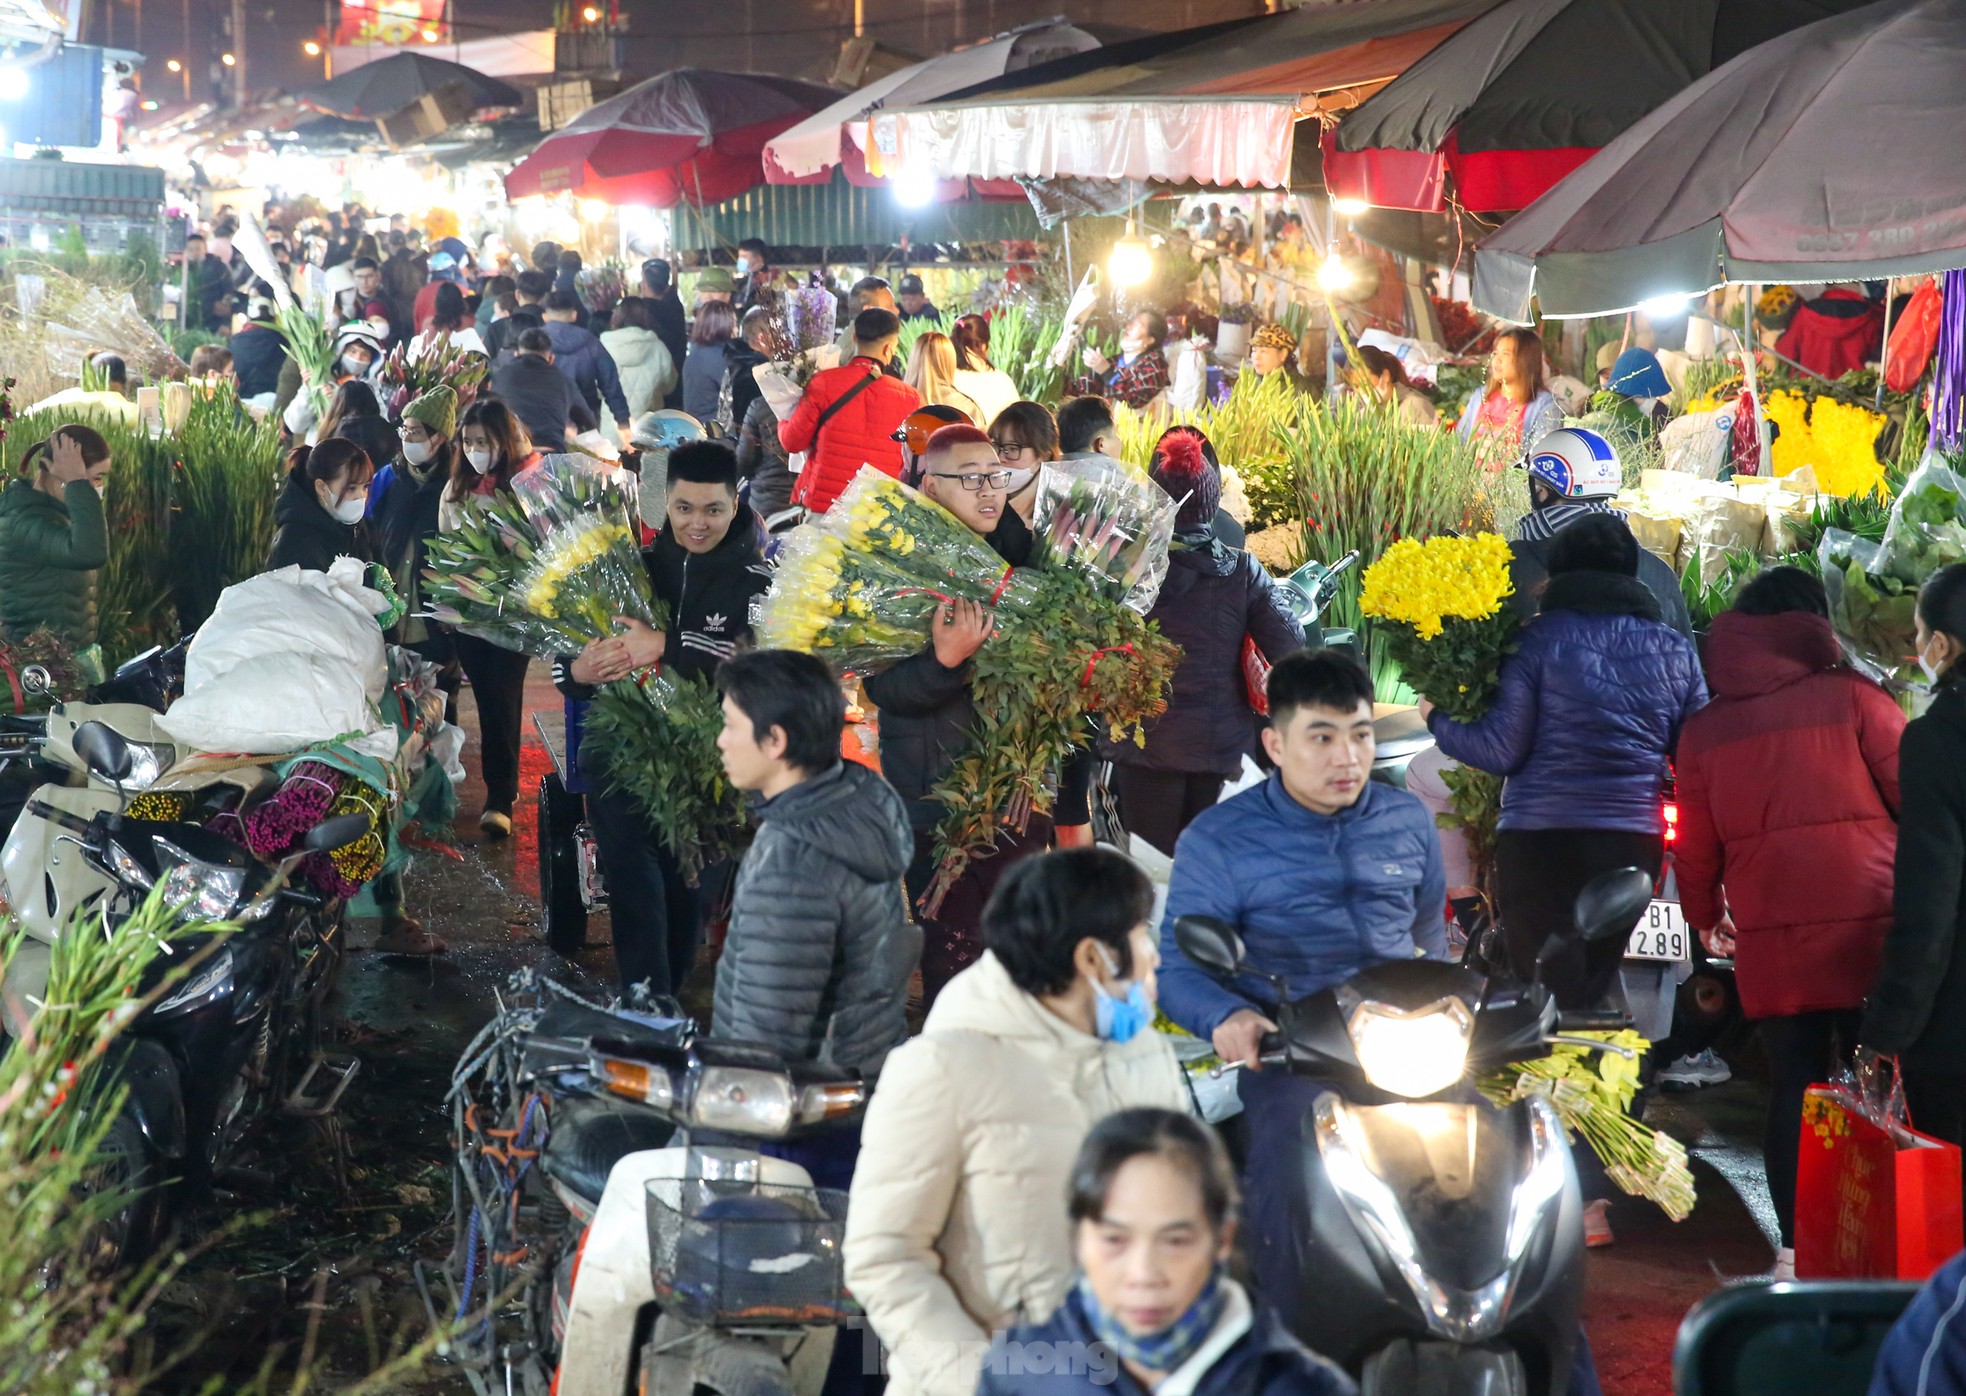 Đêm không ngủ ở chợ hoa lớn nhất Hà Nội giáp Tết - Ảnh 2.